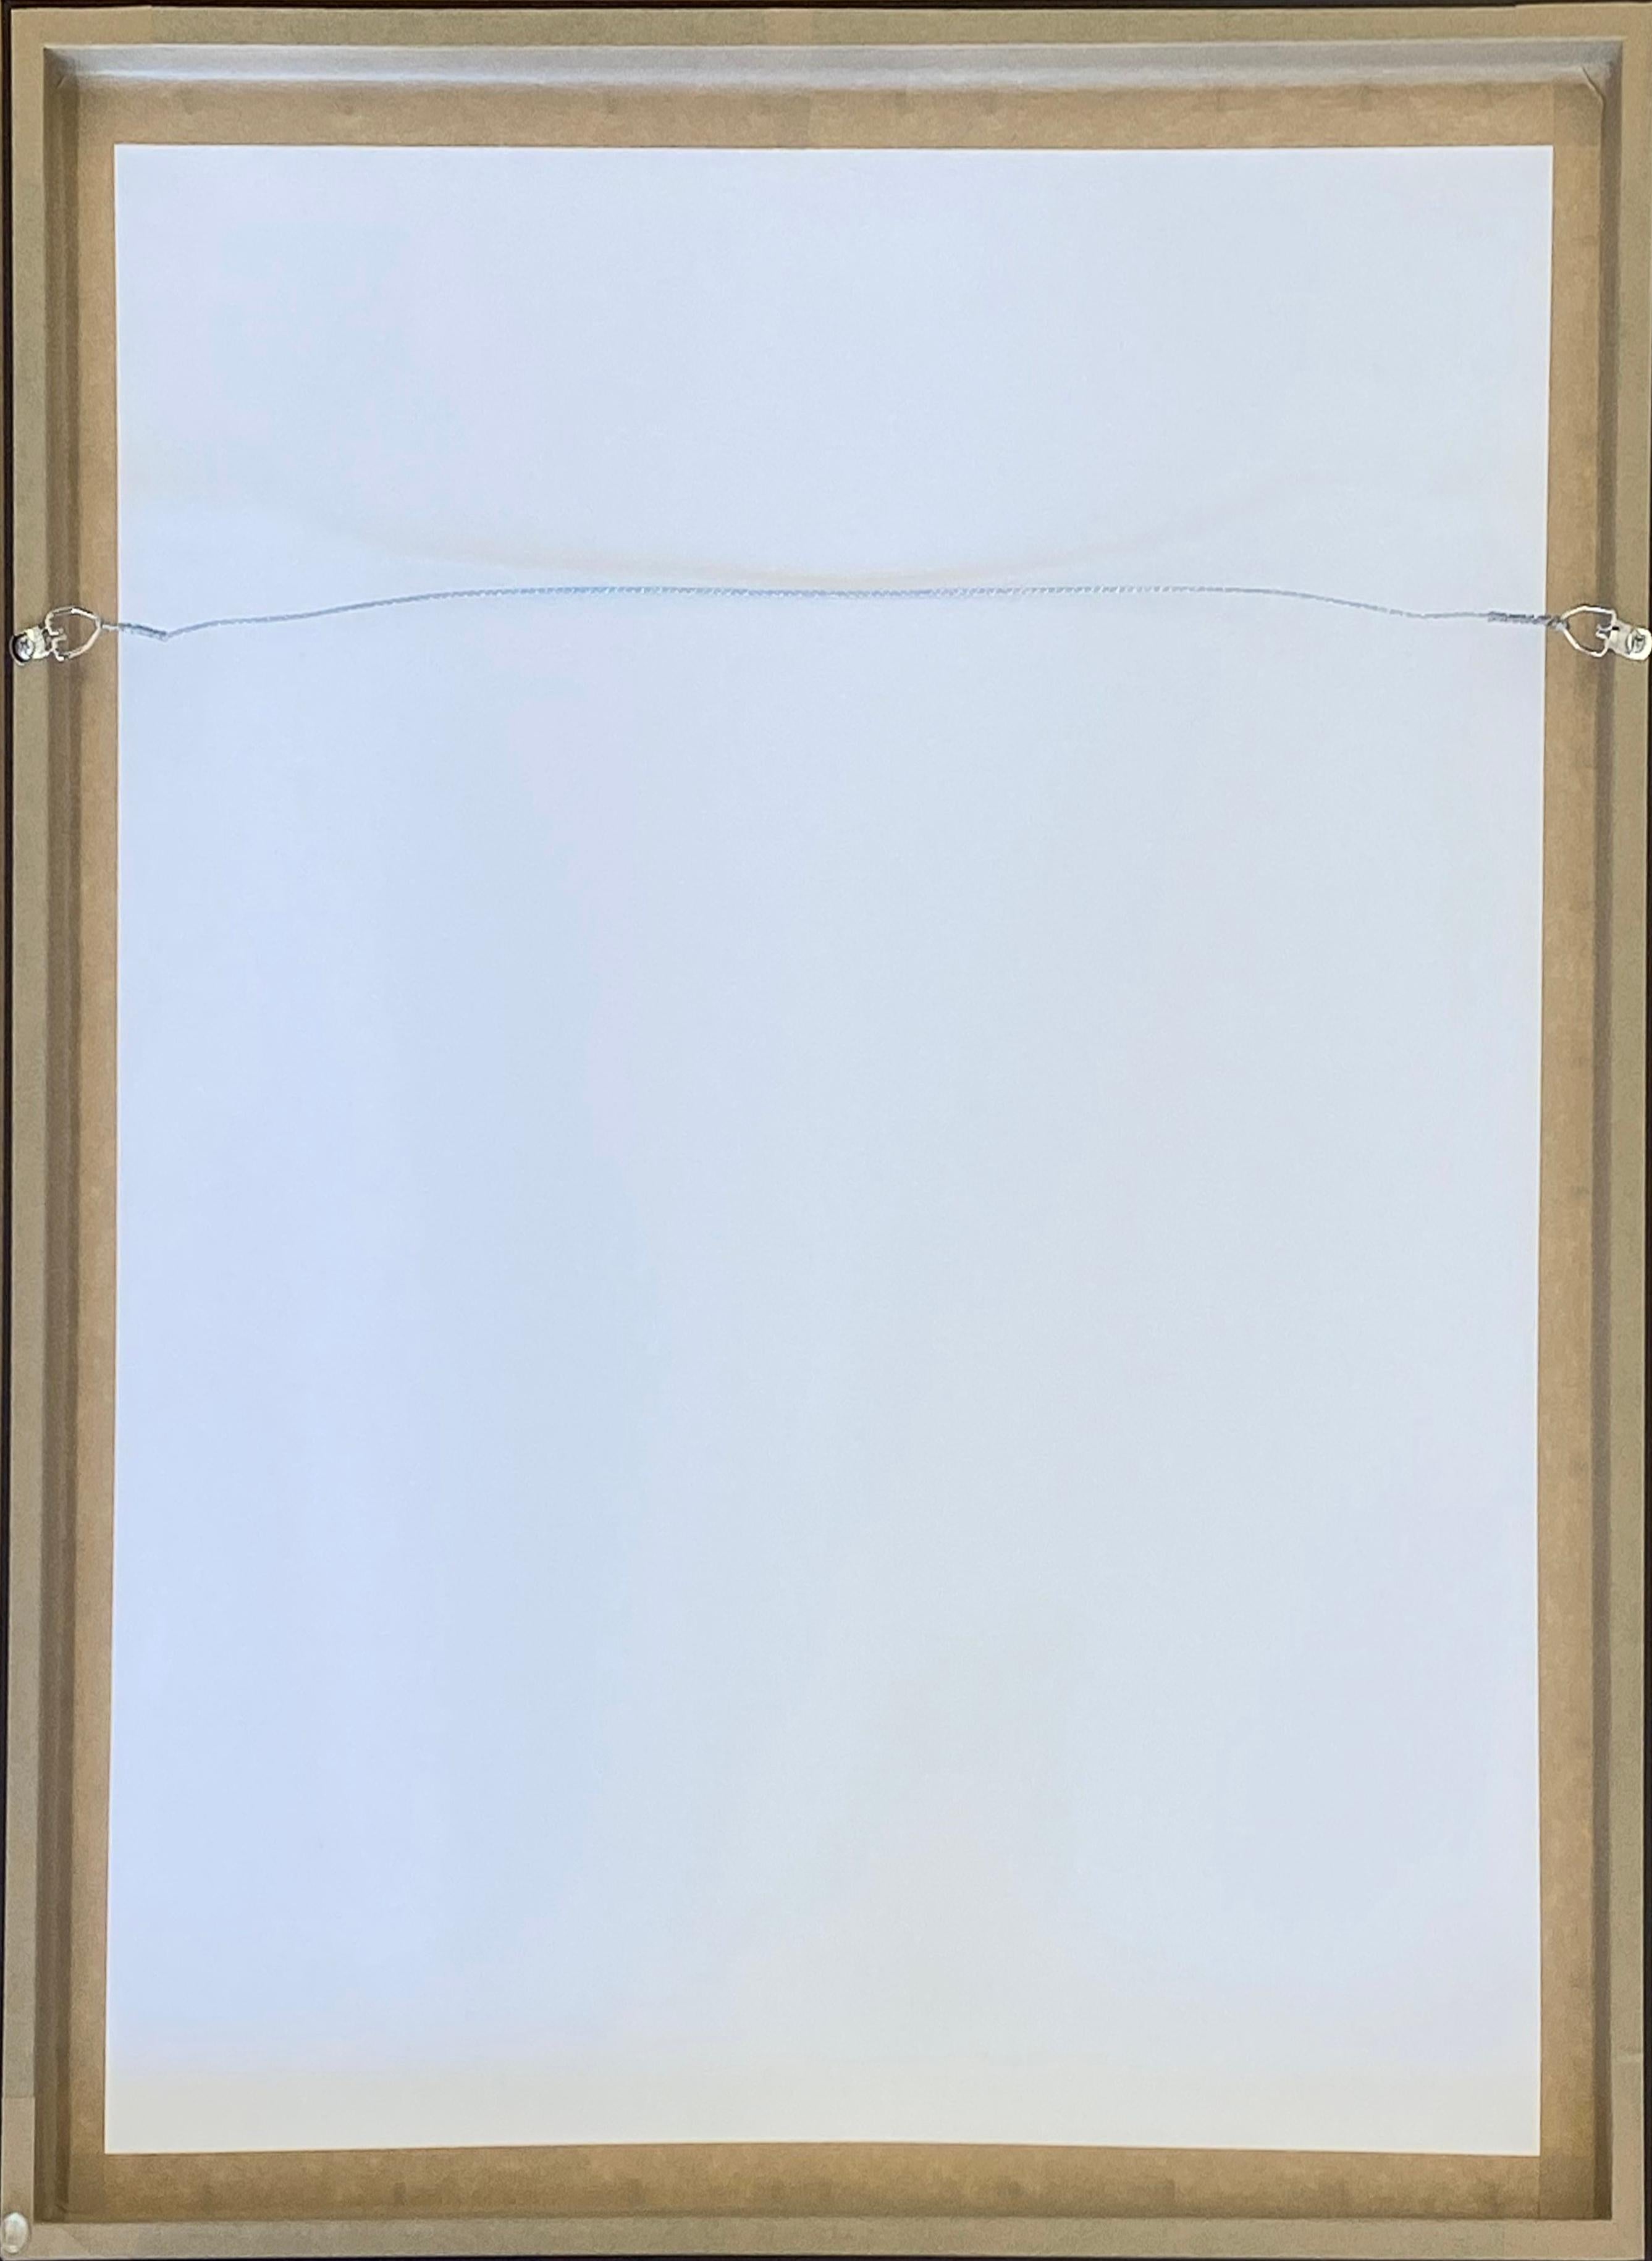 Künstler: Ralph Steadman
Titel: Alberts alte Dame
Medium: Einfarbiger Siebdruck auf White Rising Stonehenge Deckle Edge Papier
Größe: 22 x 30 Zoll 
Auflage: von 250
Jahr: 2006
Anmerkungen: Custom Framed in einem flachen schwarzen Rahmen zu passen.